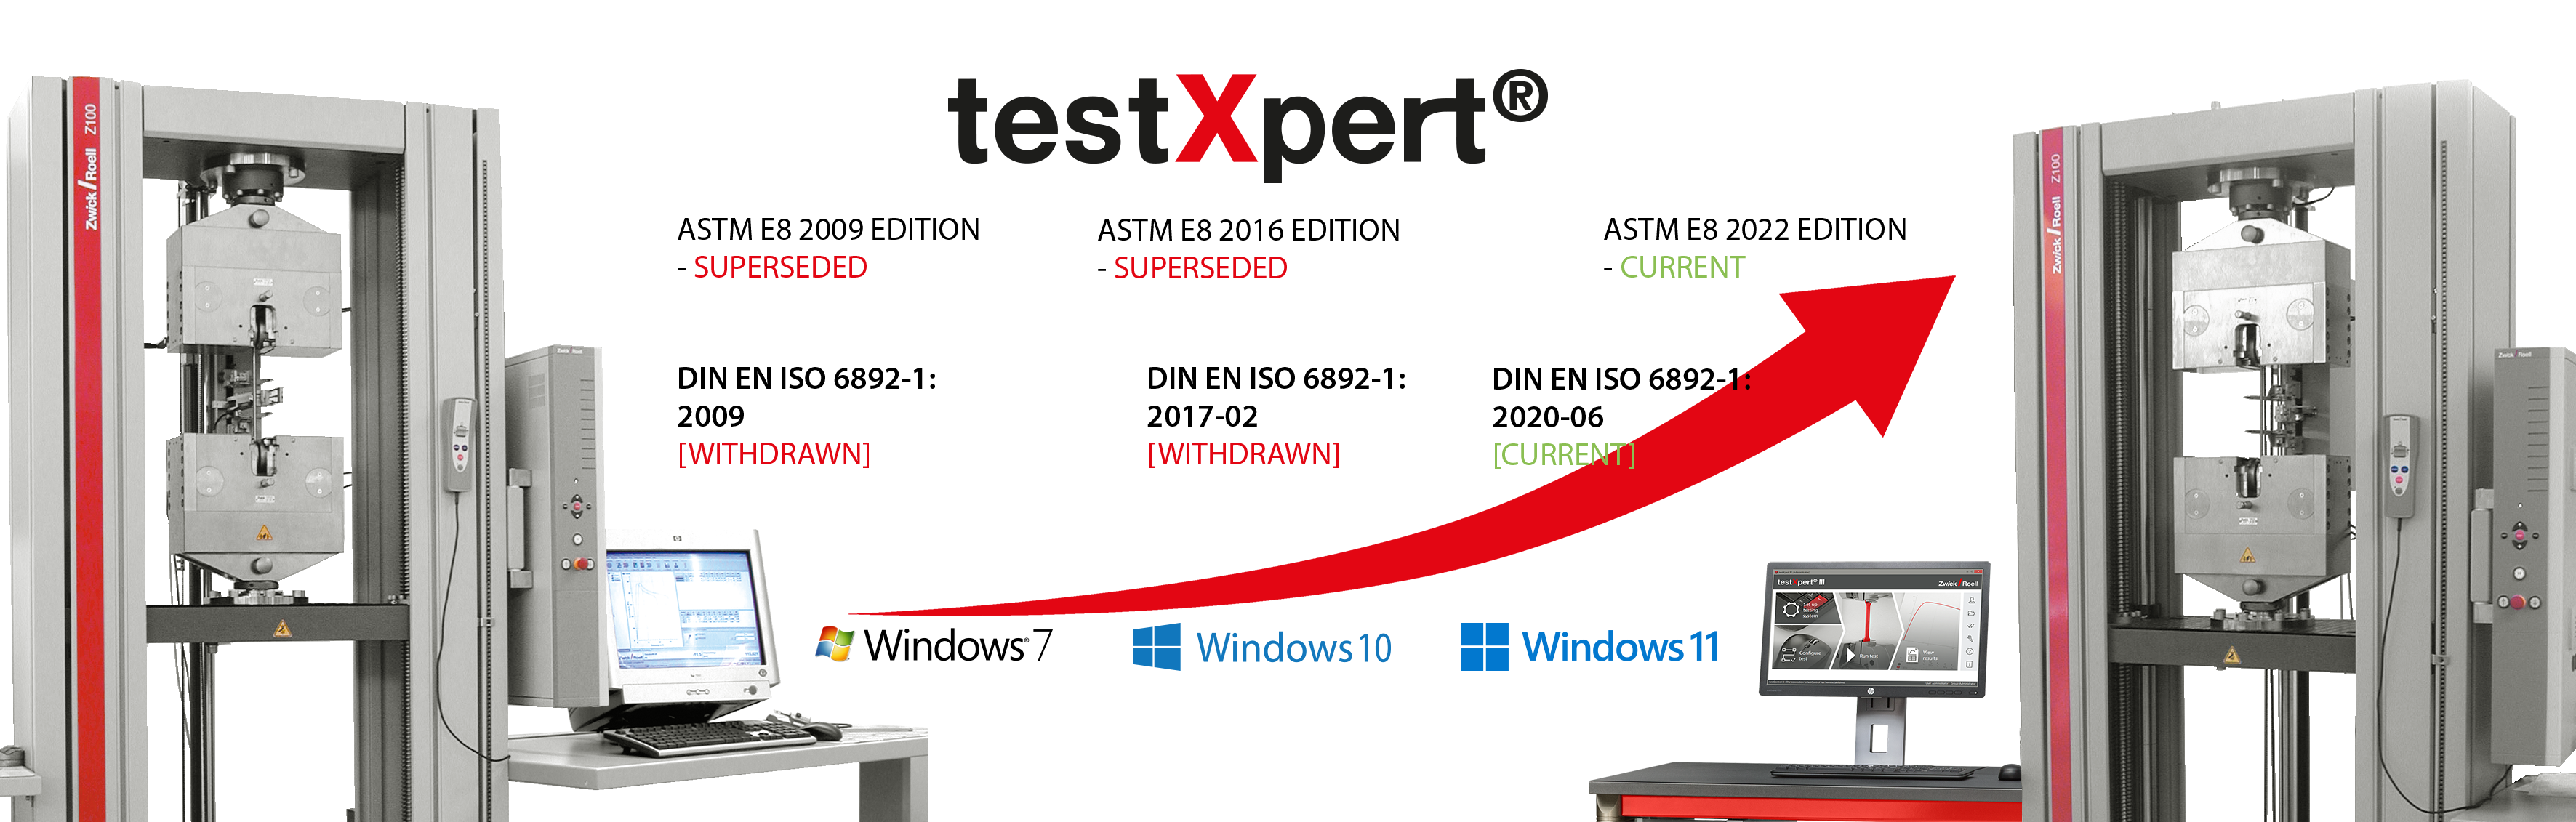 O testXpert acompanha o crescimento, quando um novo sistema operacional é introduzido ou quando ocorre a modificação de uma norma